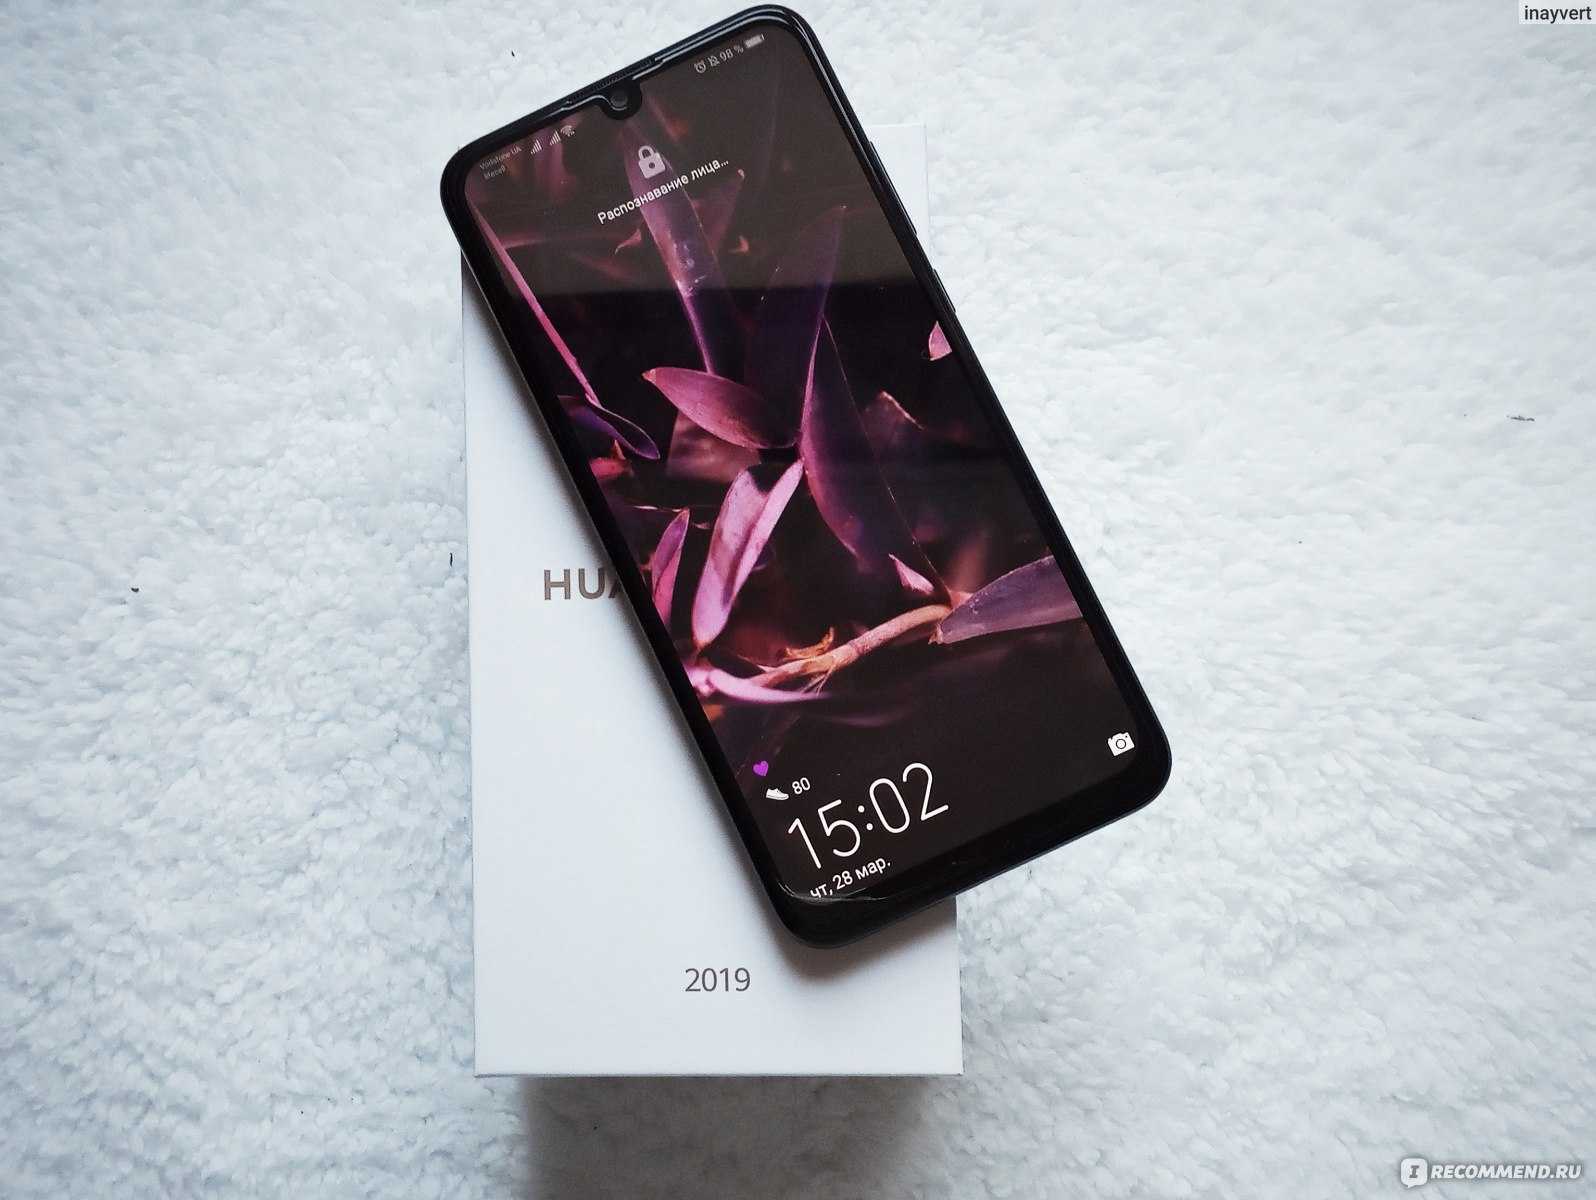 Huawei p smart 2019 - обзор смартфона, стоит ли покупать